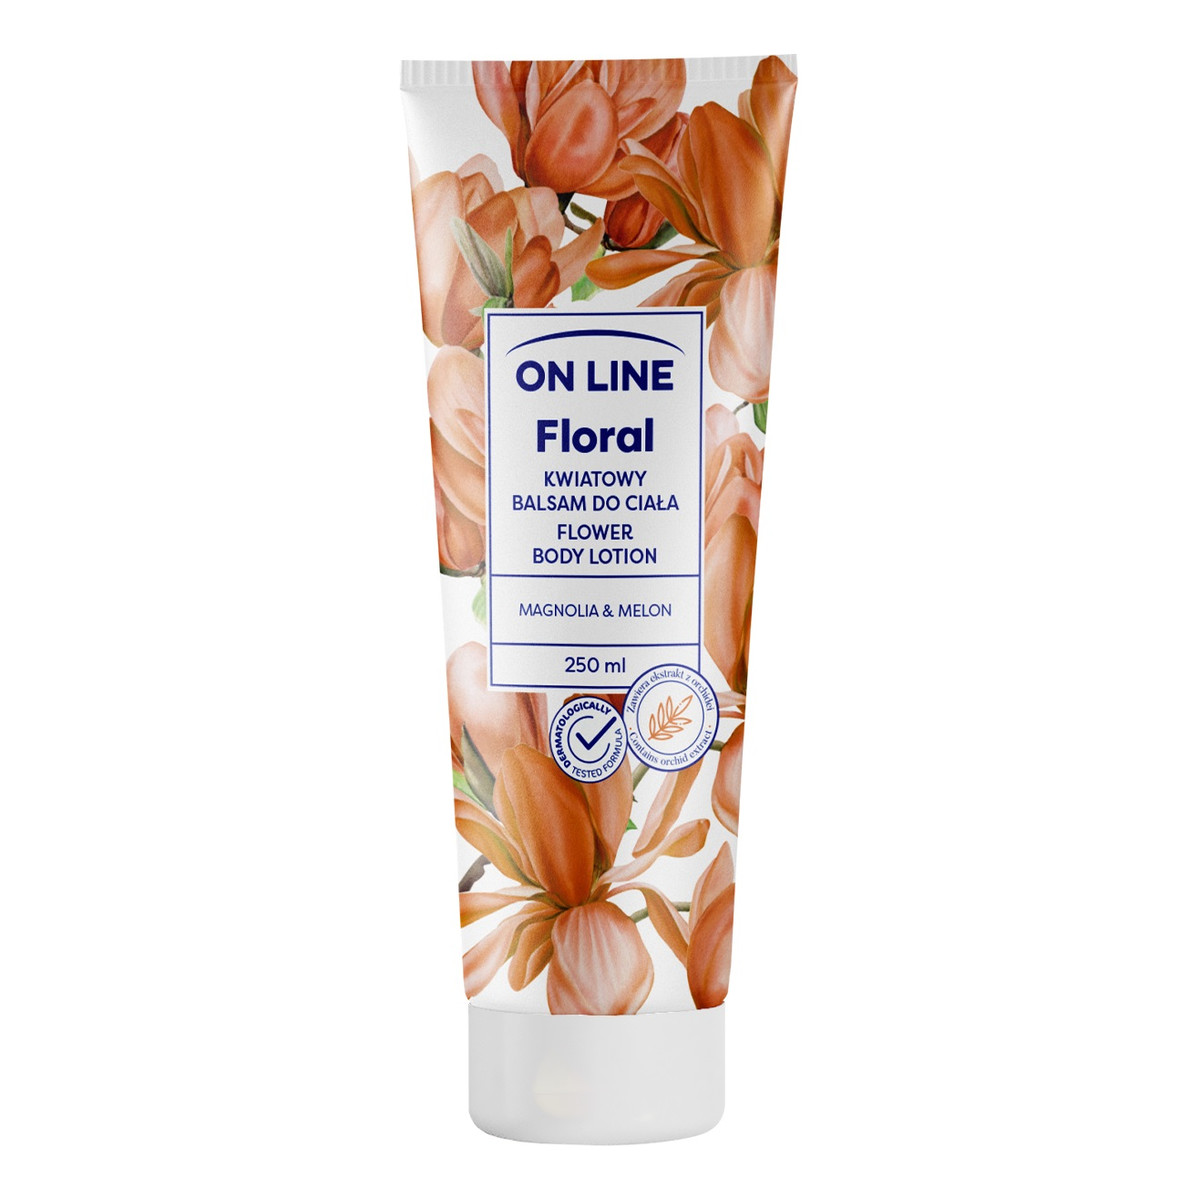 On Line Floral Kwiatowy balsam do ciała - Magnolia & Melon 250ml